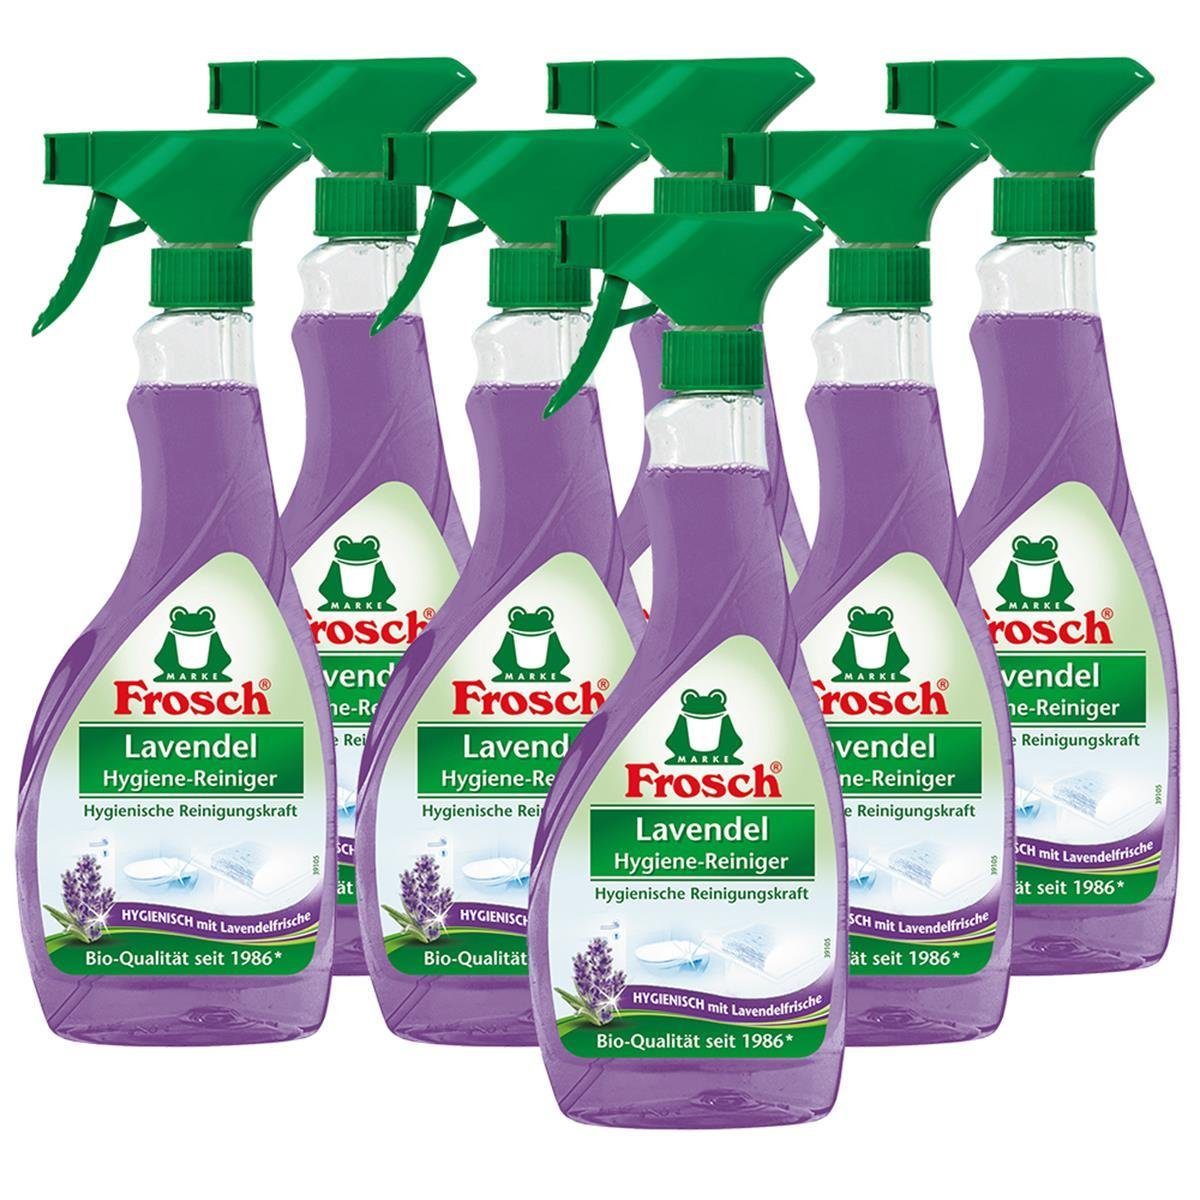 FROSCH 7x Frosch Lavendel Hygiene-Reiniger 500 ml Sprühflasche Spezialwaschmittel